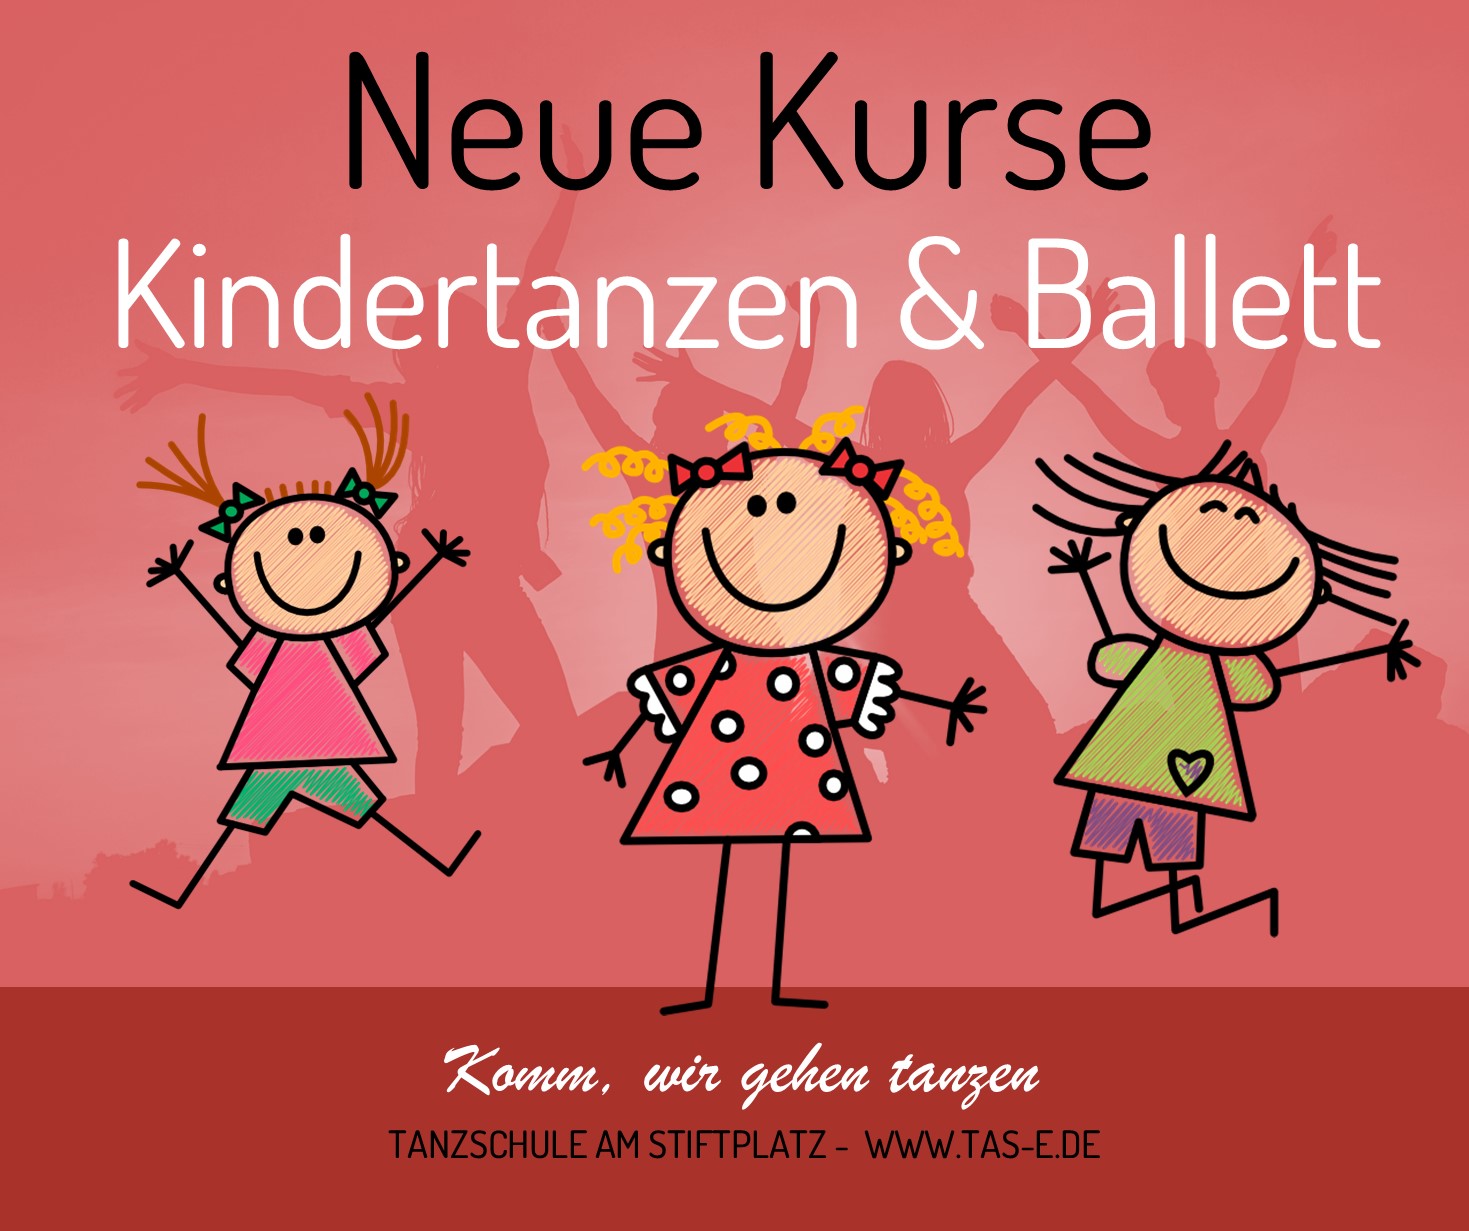 Bild der Facebook Werbung für Kindertanzen in der Tanzschule